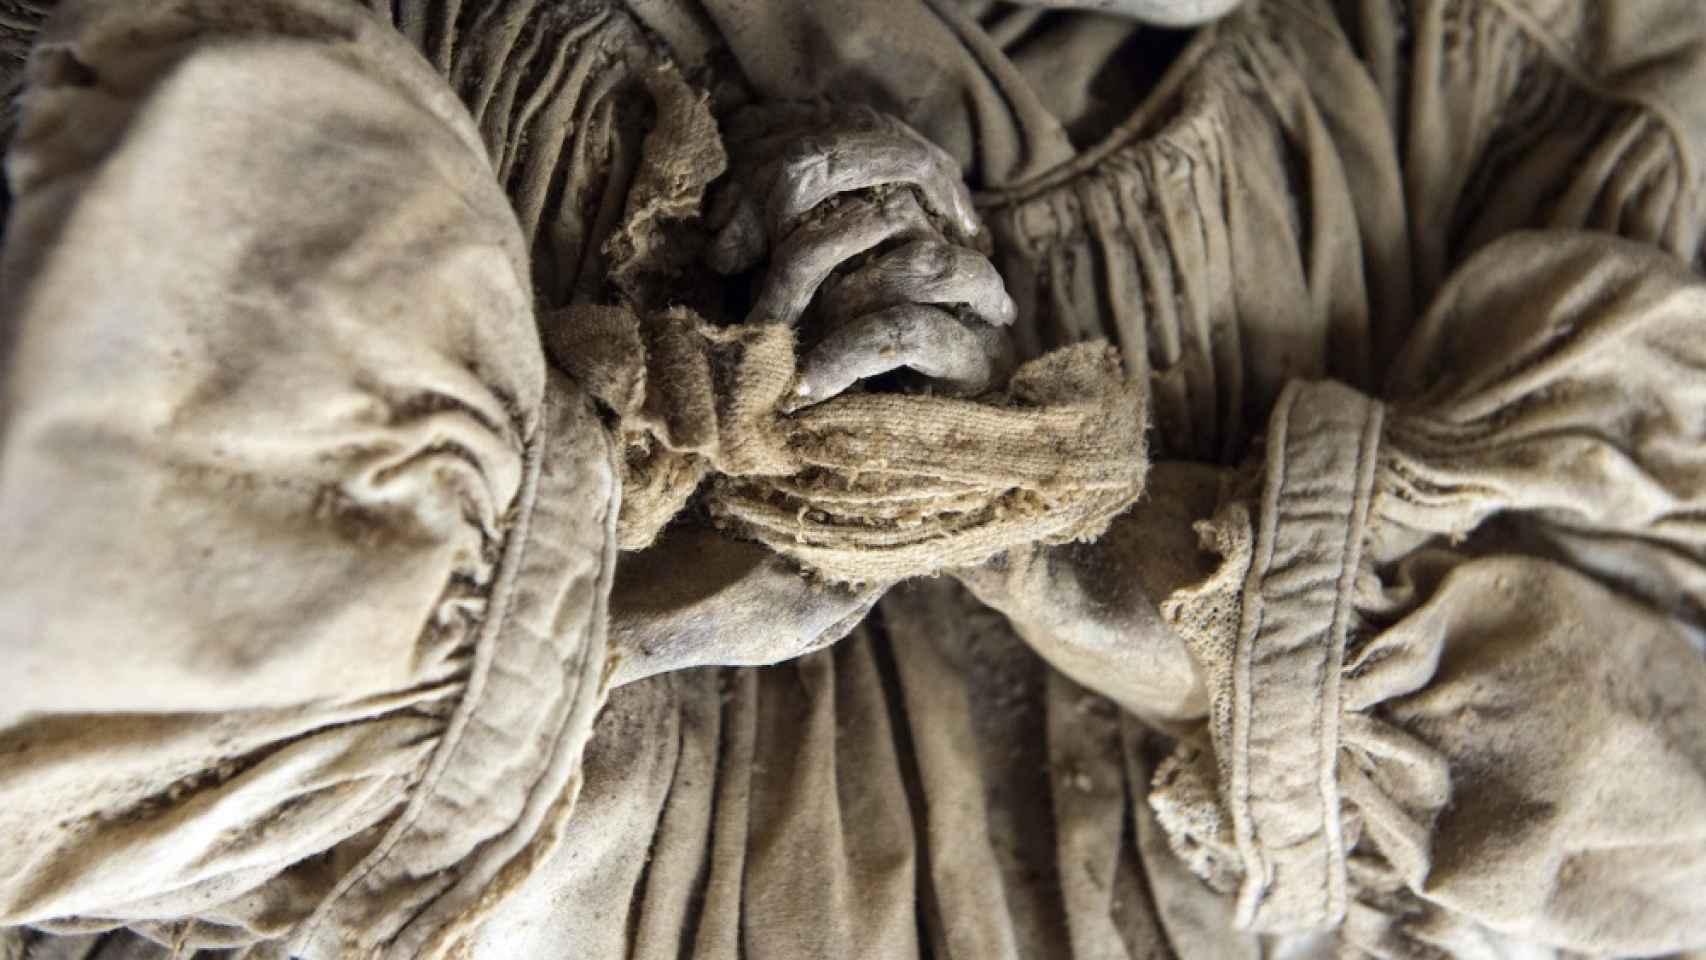 Detalle de las manos entrelazadas y sujetas con una tela de uno de los restos momificados.